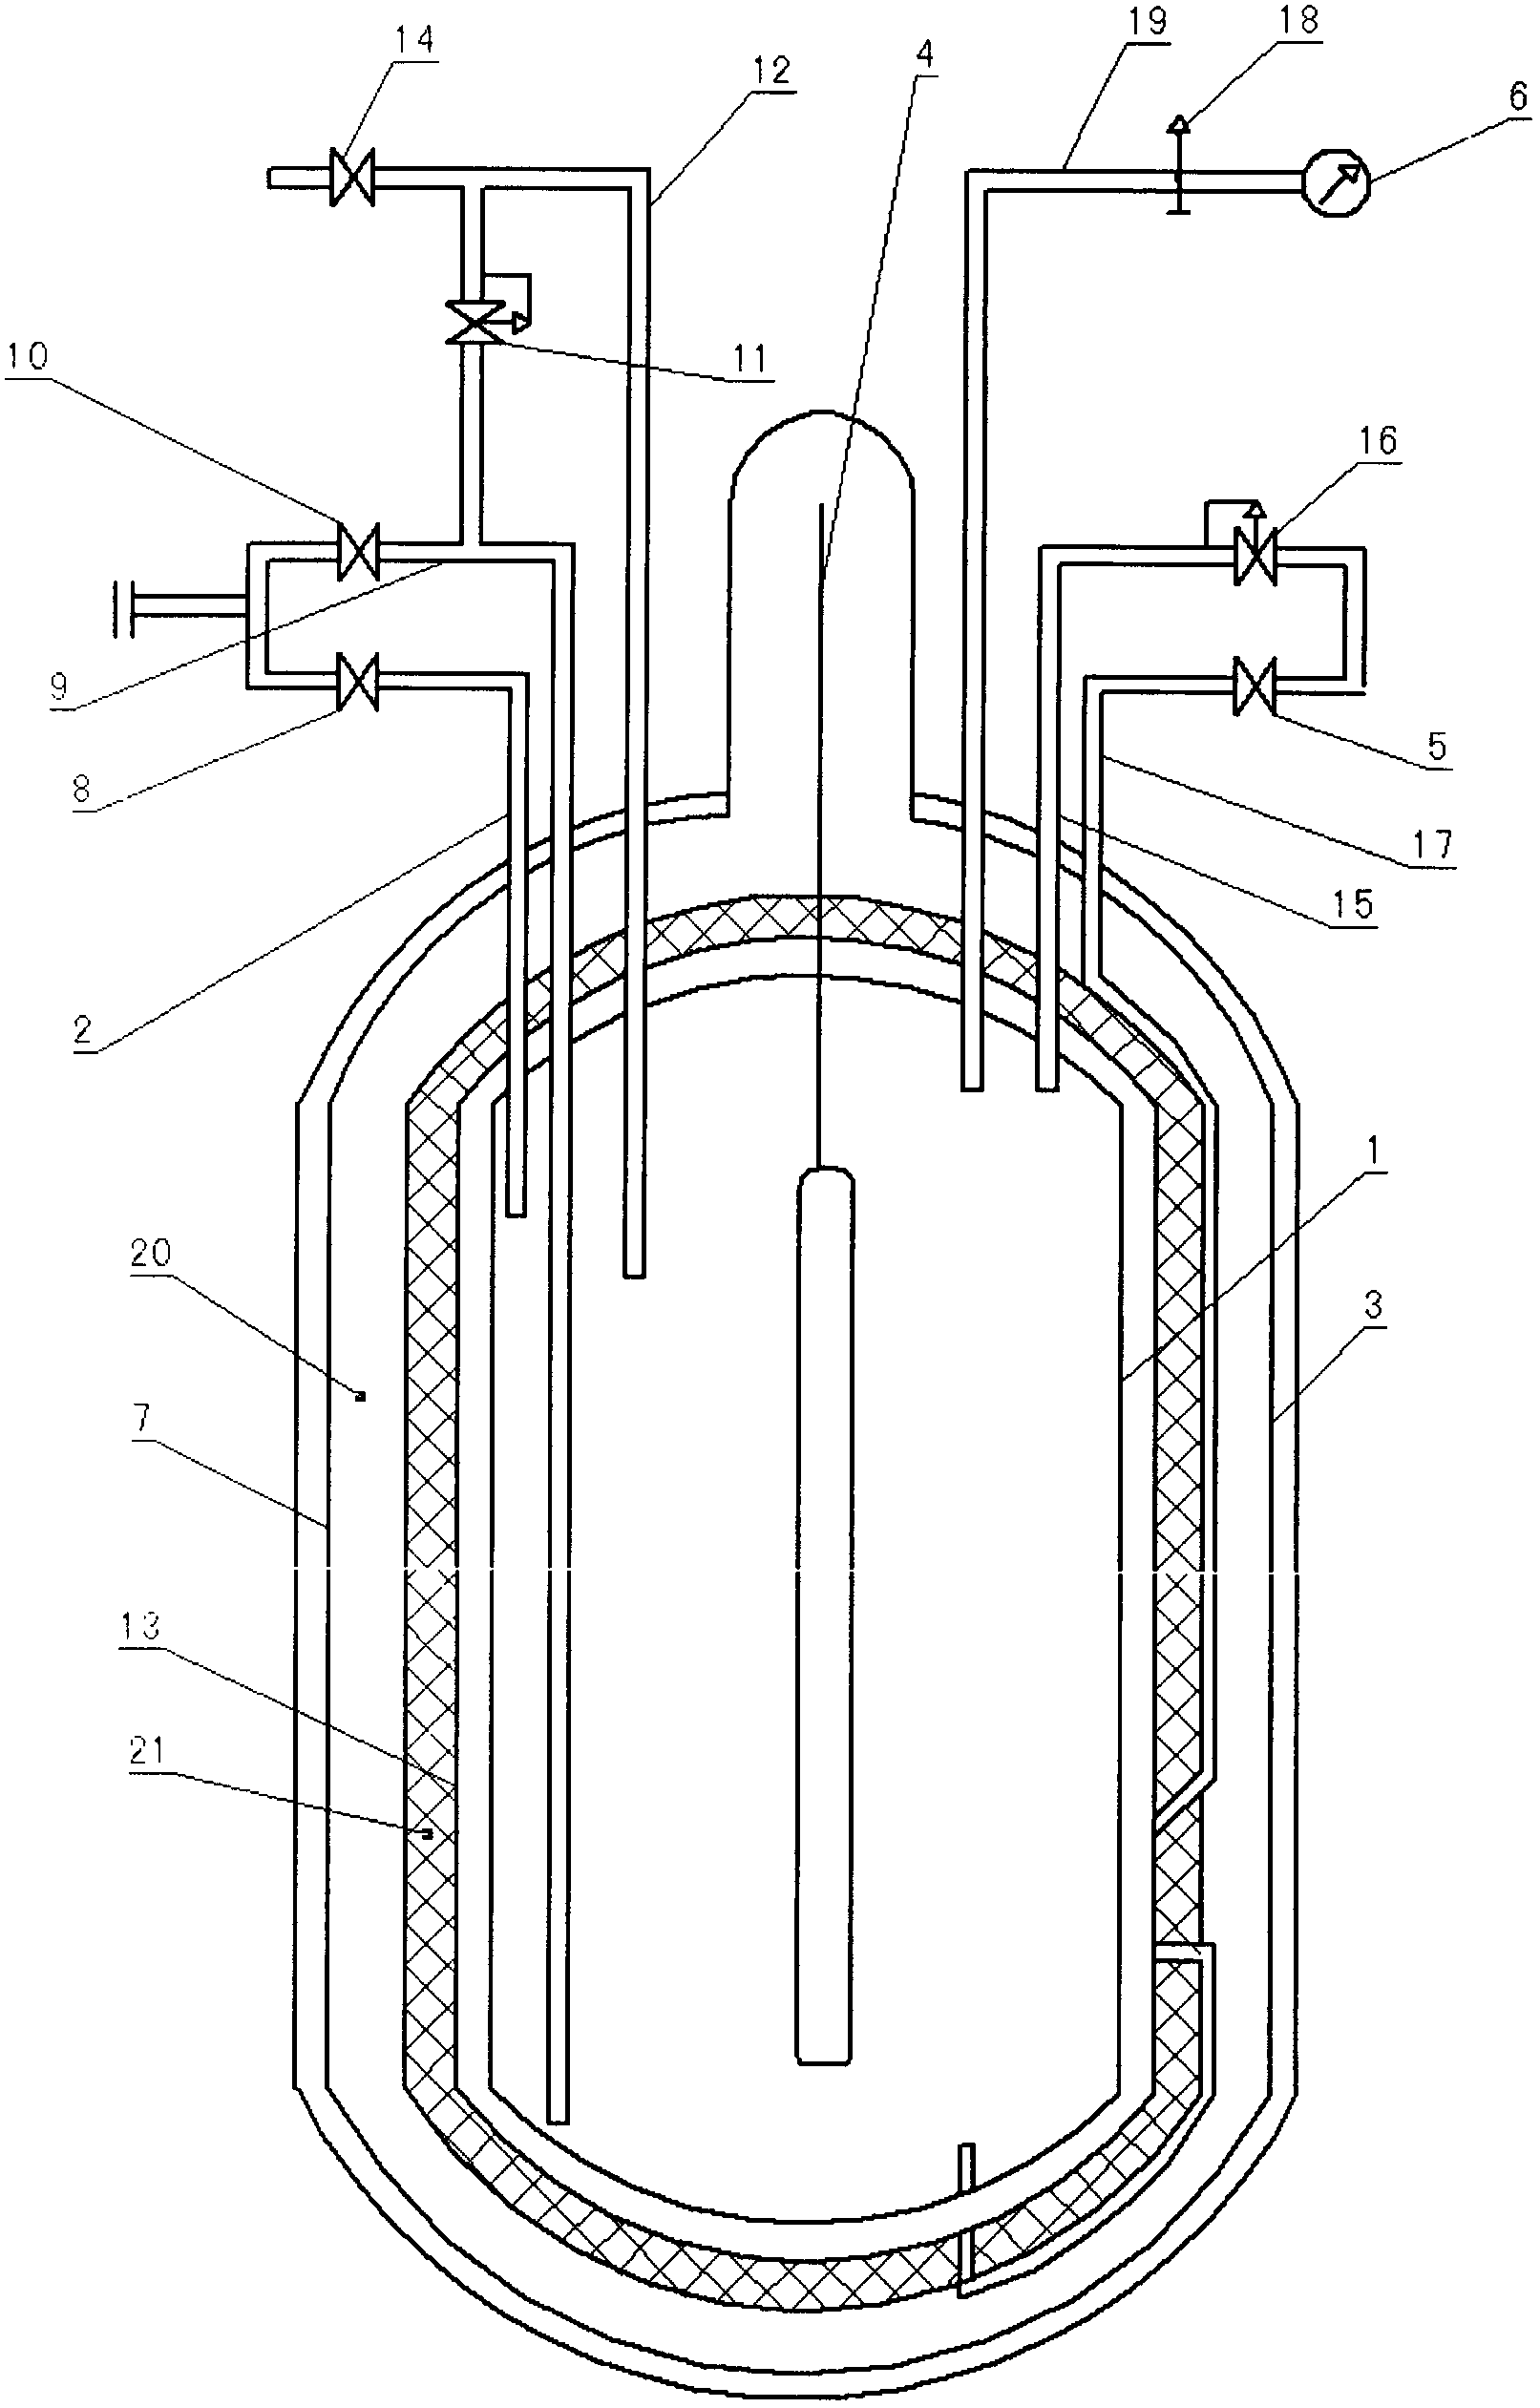 Welded adiabatic gas cylinder